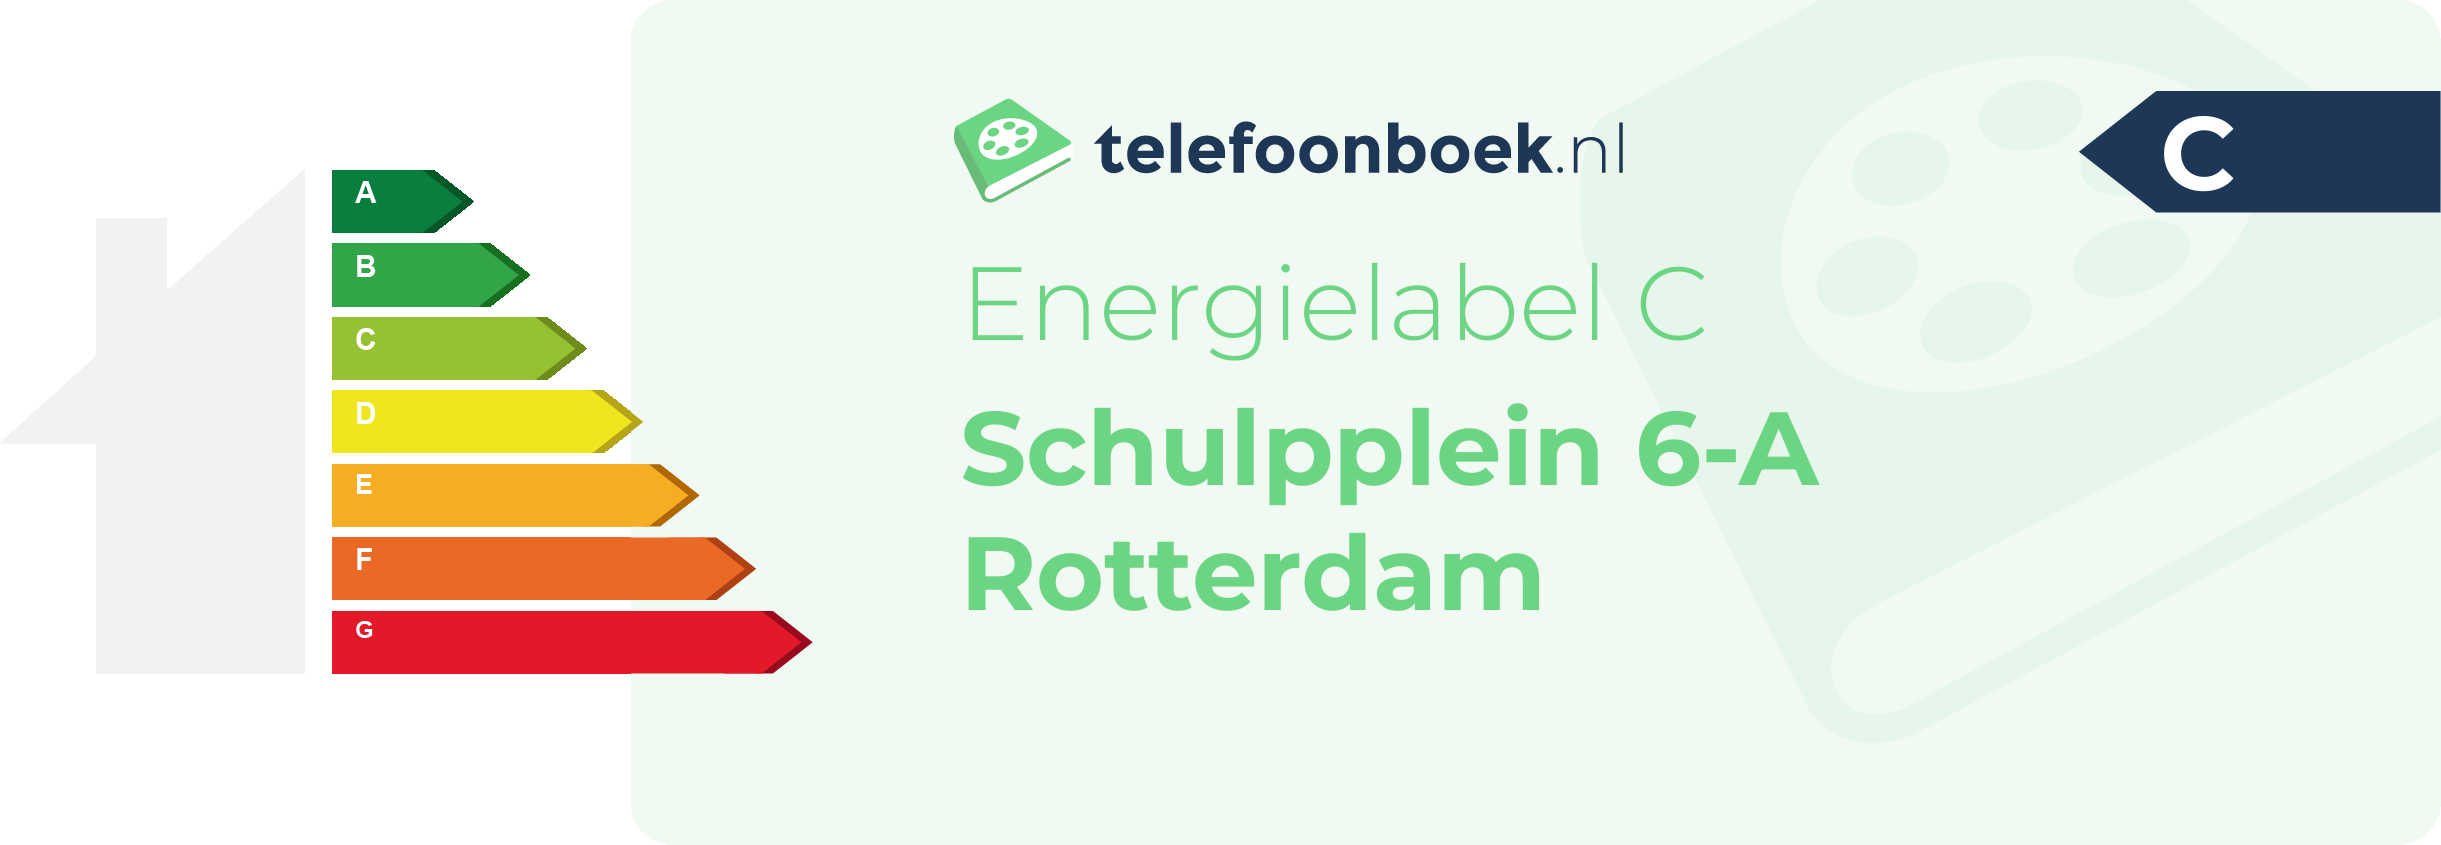 Energielabel Schulpplein 6-A Rotterdam